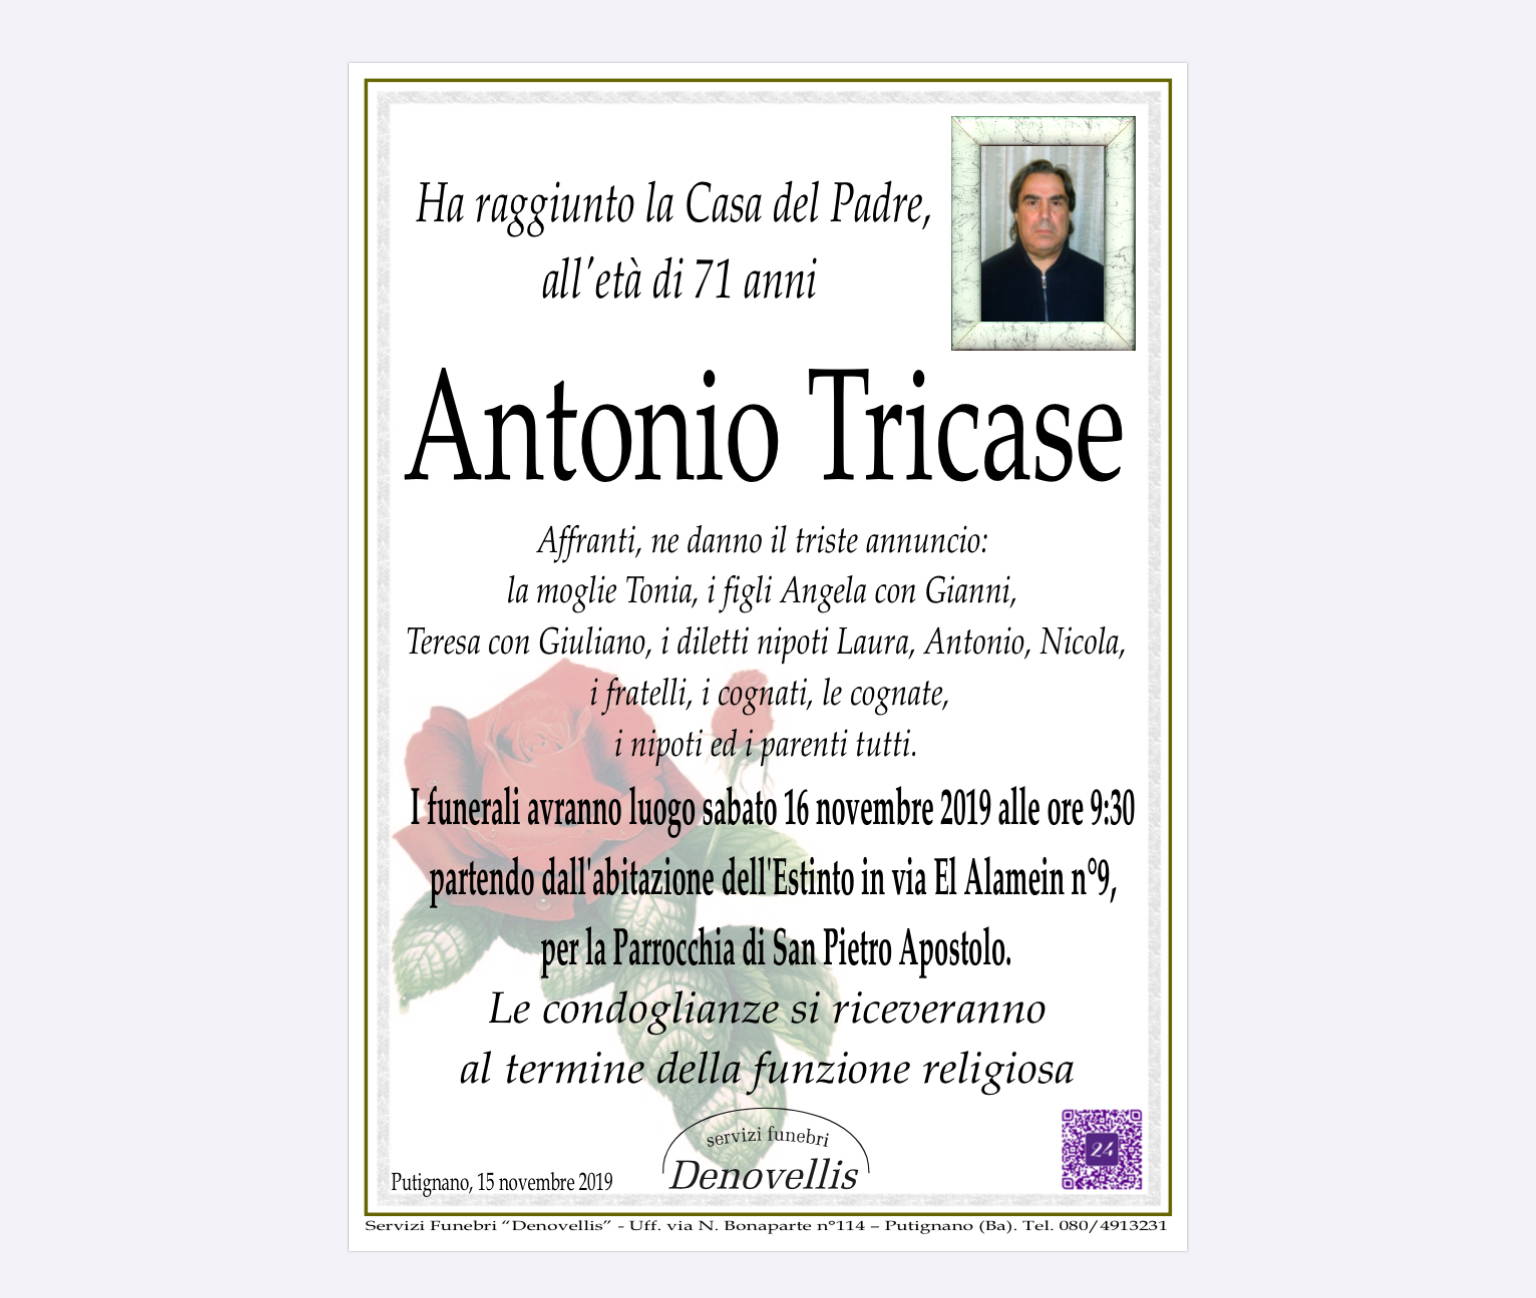 Antonio Tricase